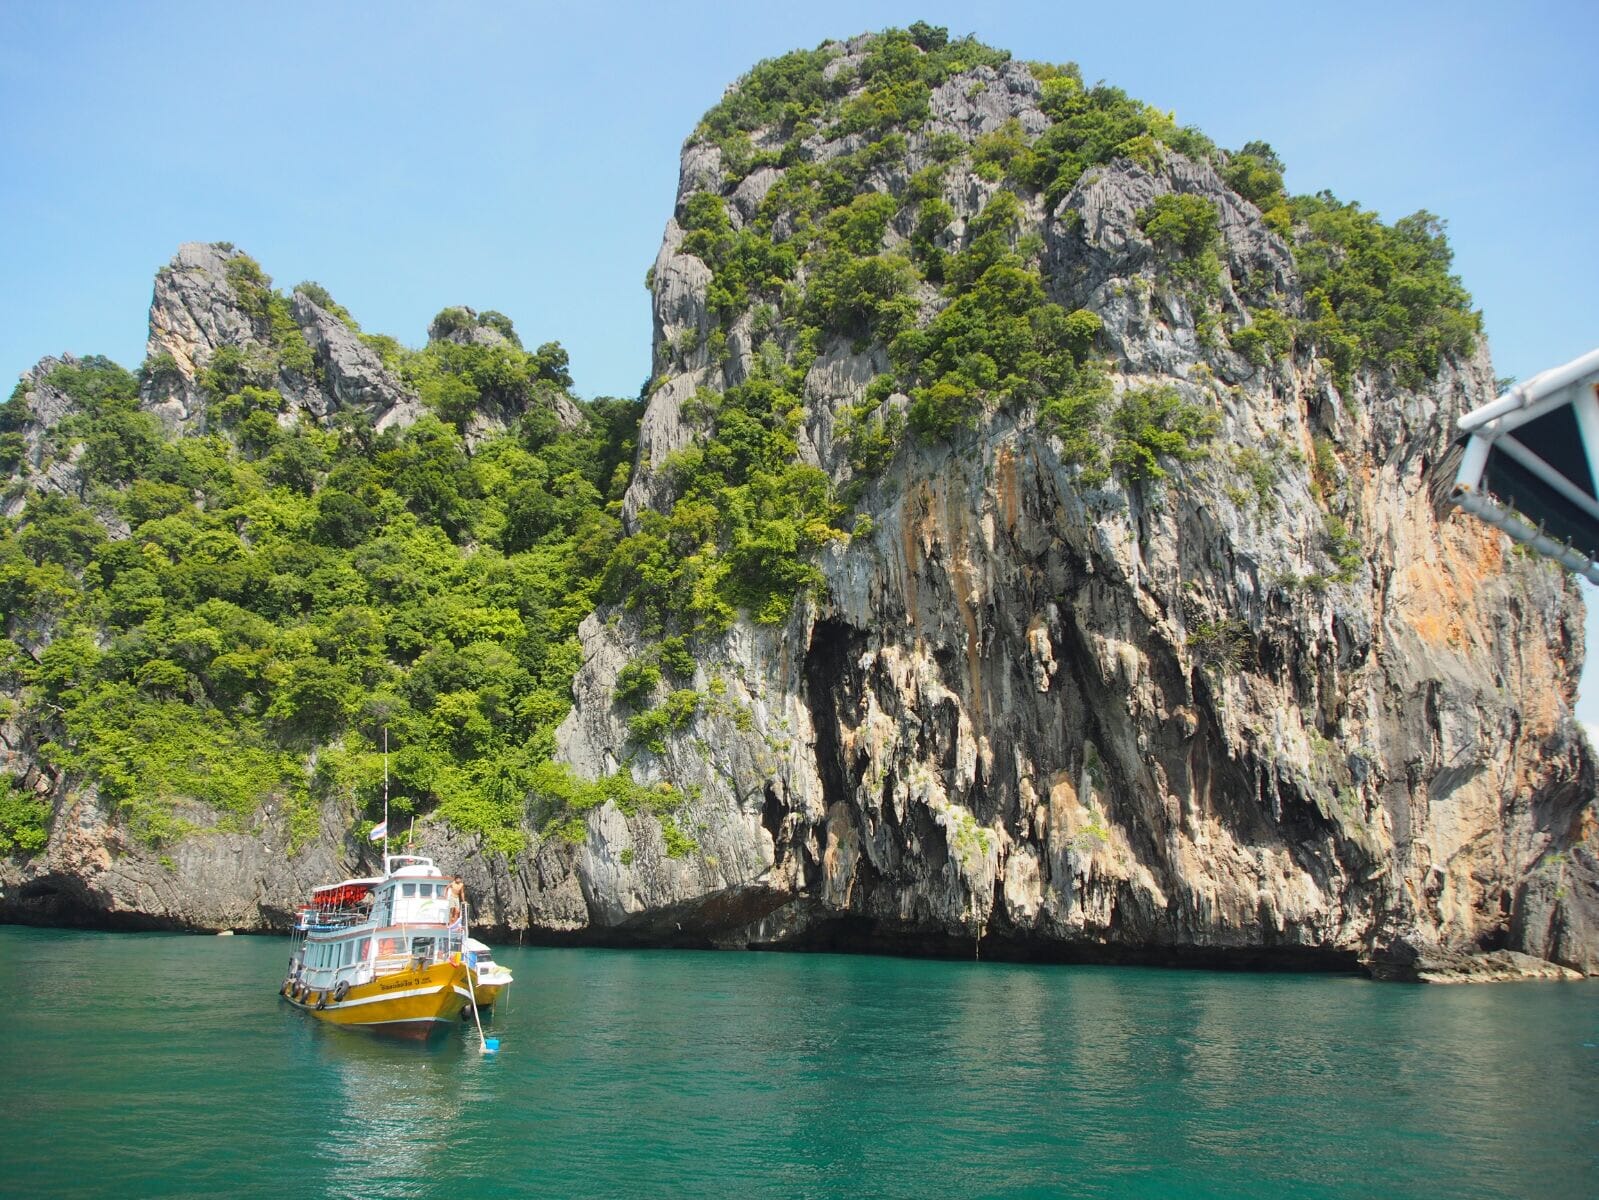 Vene vedessä kallioisen saaren edessä Thaimaassa.